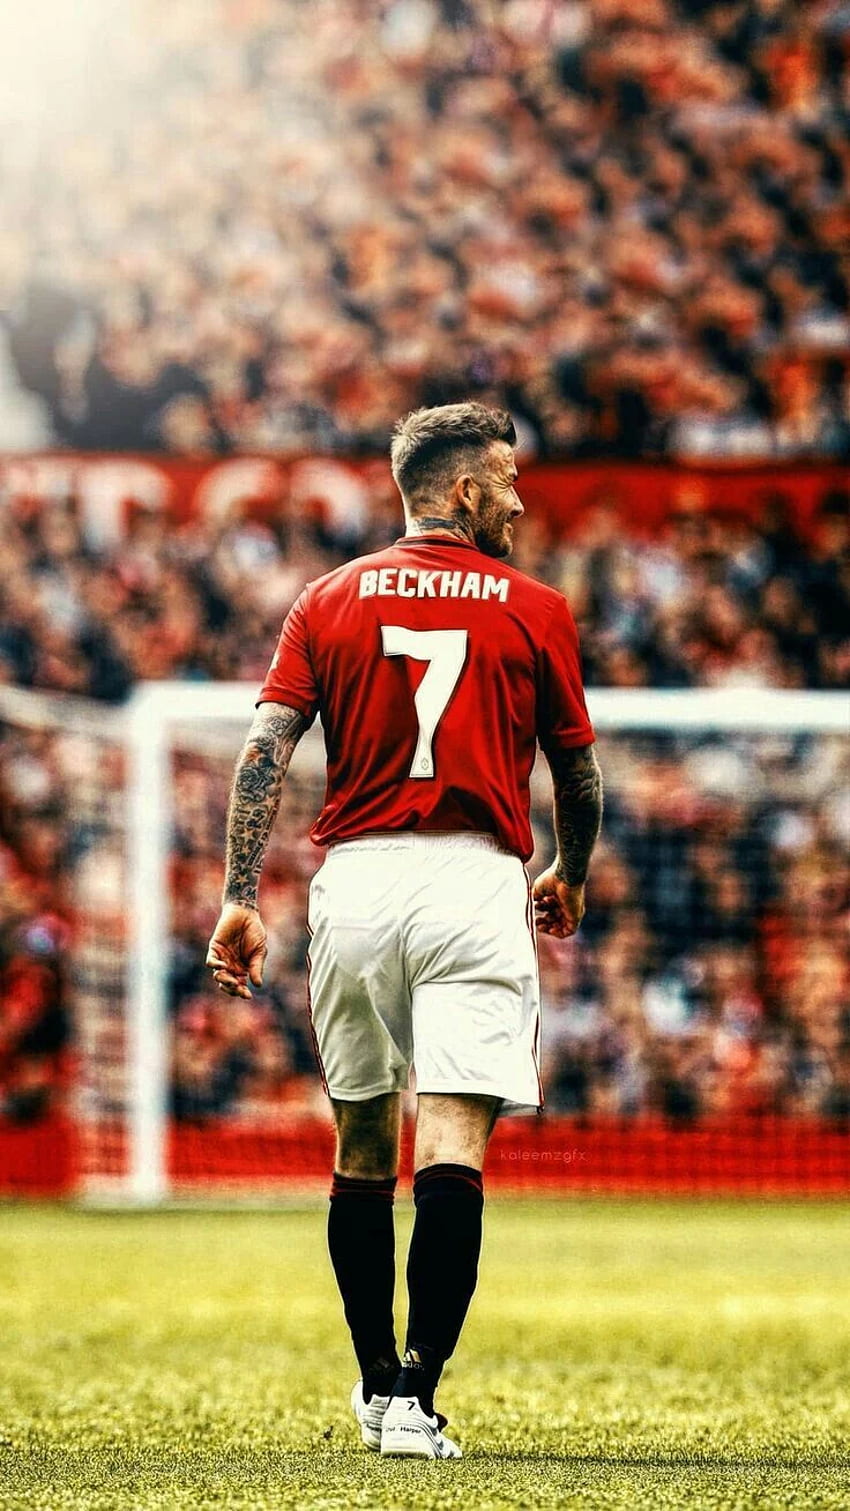 Beckham. David beckham manchester united, David beckham football, Beckham football, David Beckham iPhone HD phone wallpaper